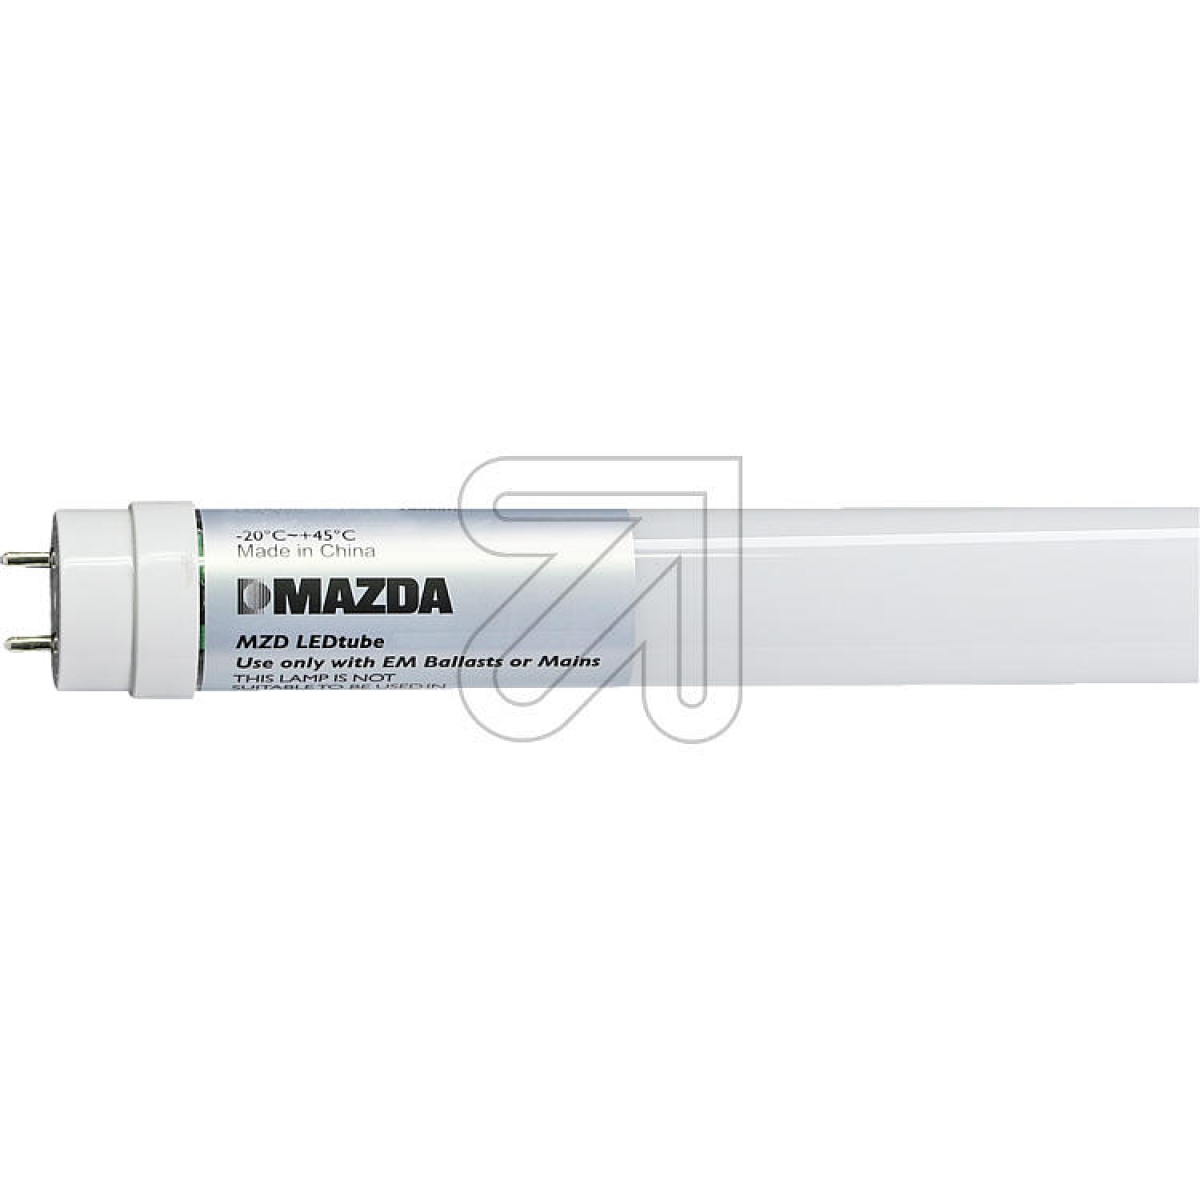 MAZDA LightingMAZDA LEDtube T8 1500mm UO 31.5W 840 54378900-Price for 20 pcs.Article-No: 523040